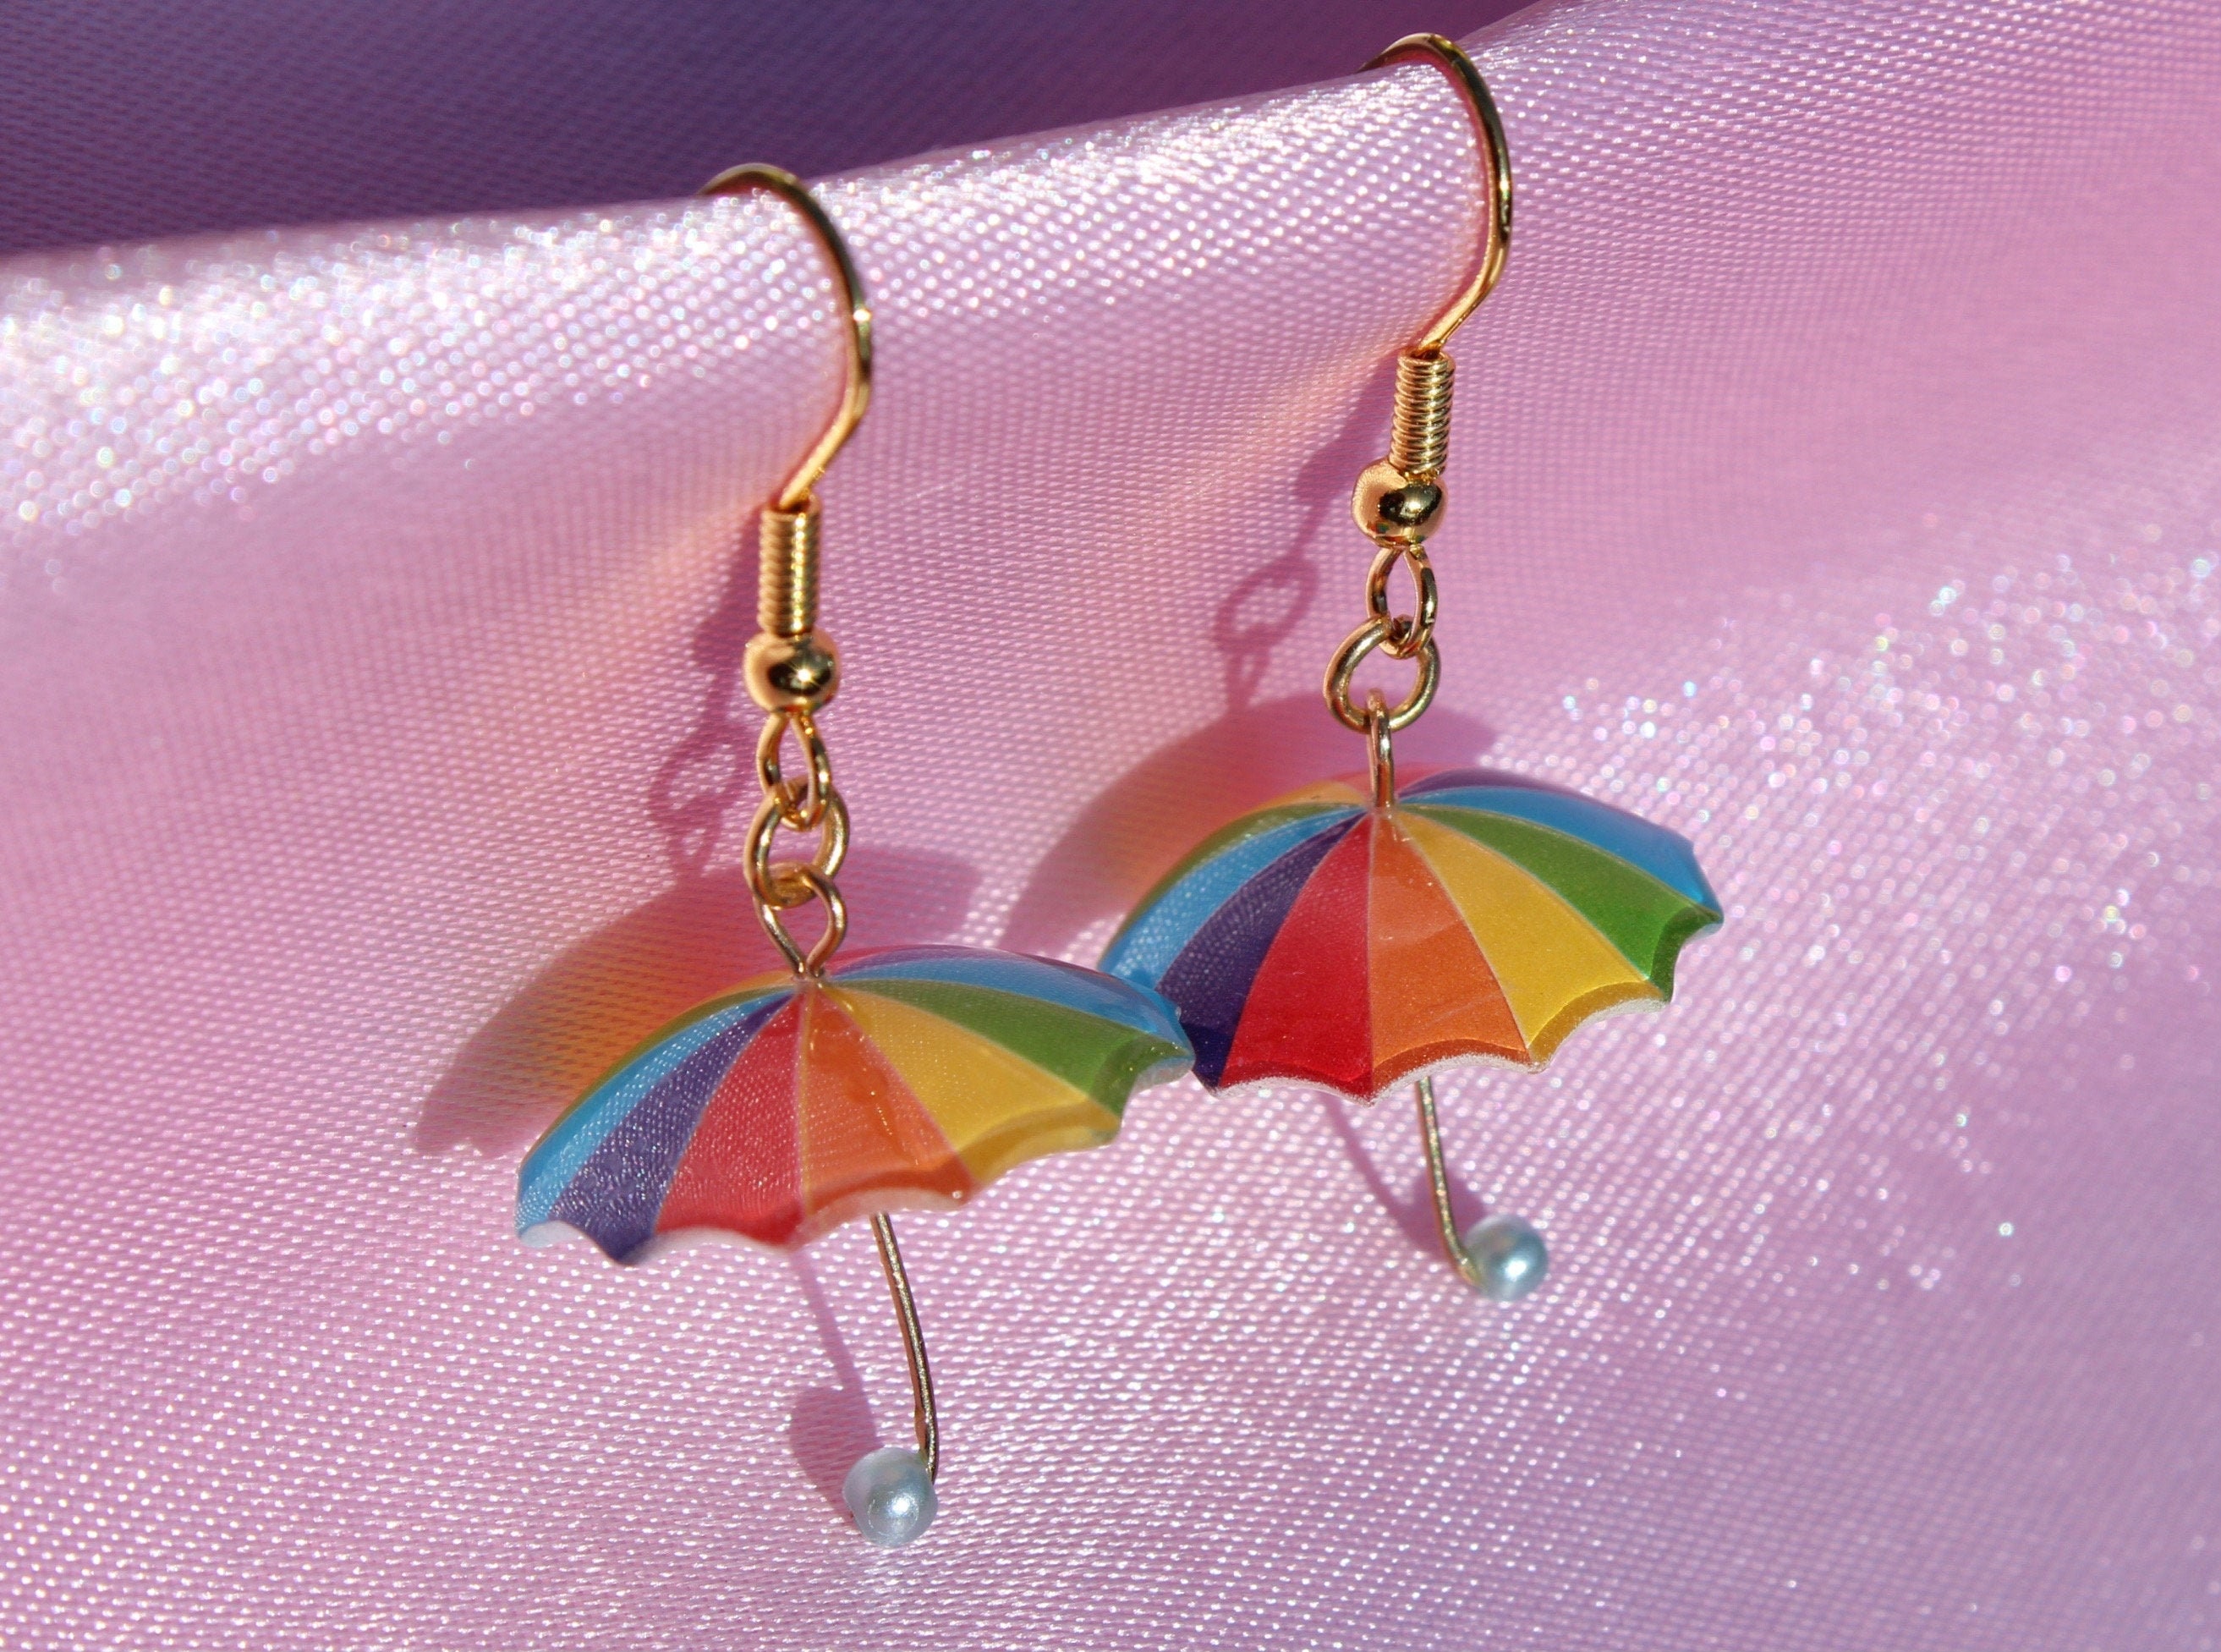 Sonnenschirm Haken Sonnenschirm Zubehör Regenschirm Haken Regenschirm  Kleiderbügel Zum Aufhängen 2 Stück Blau